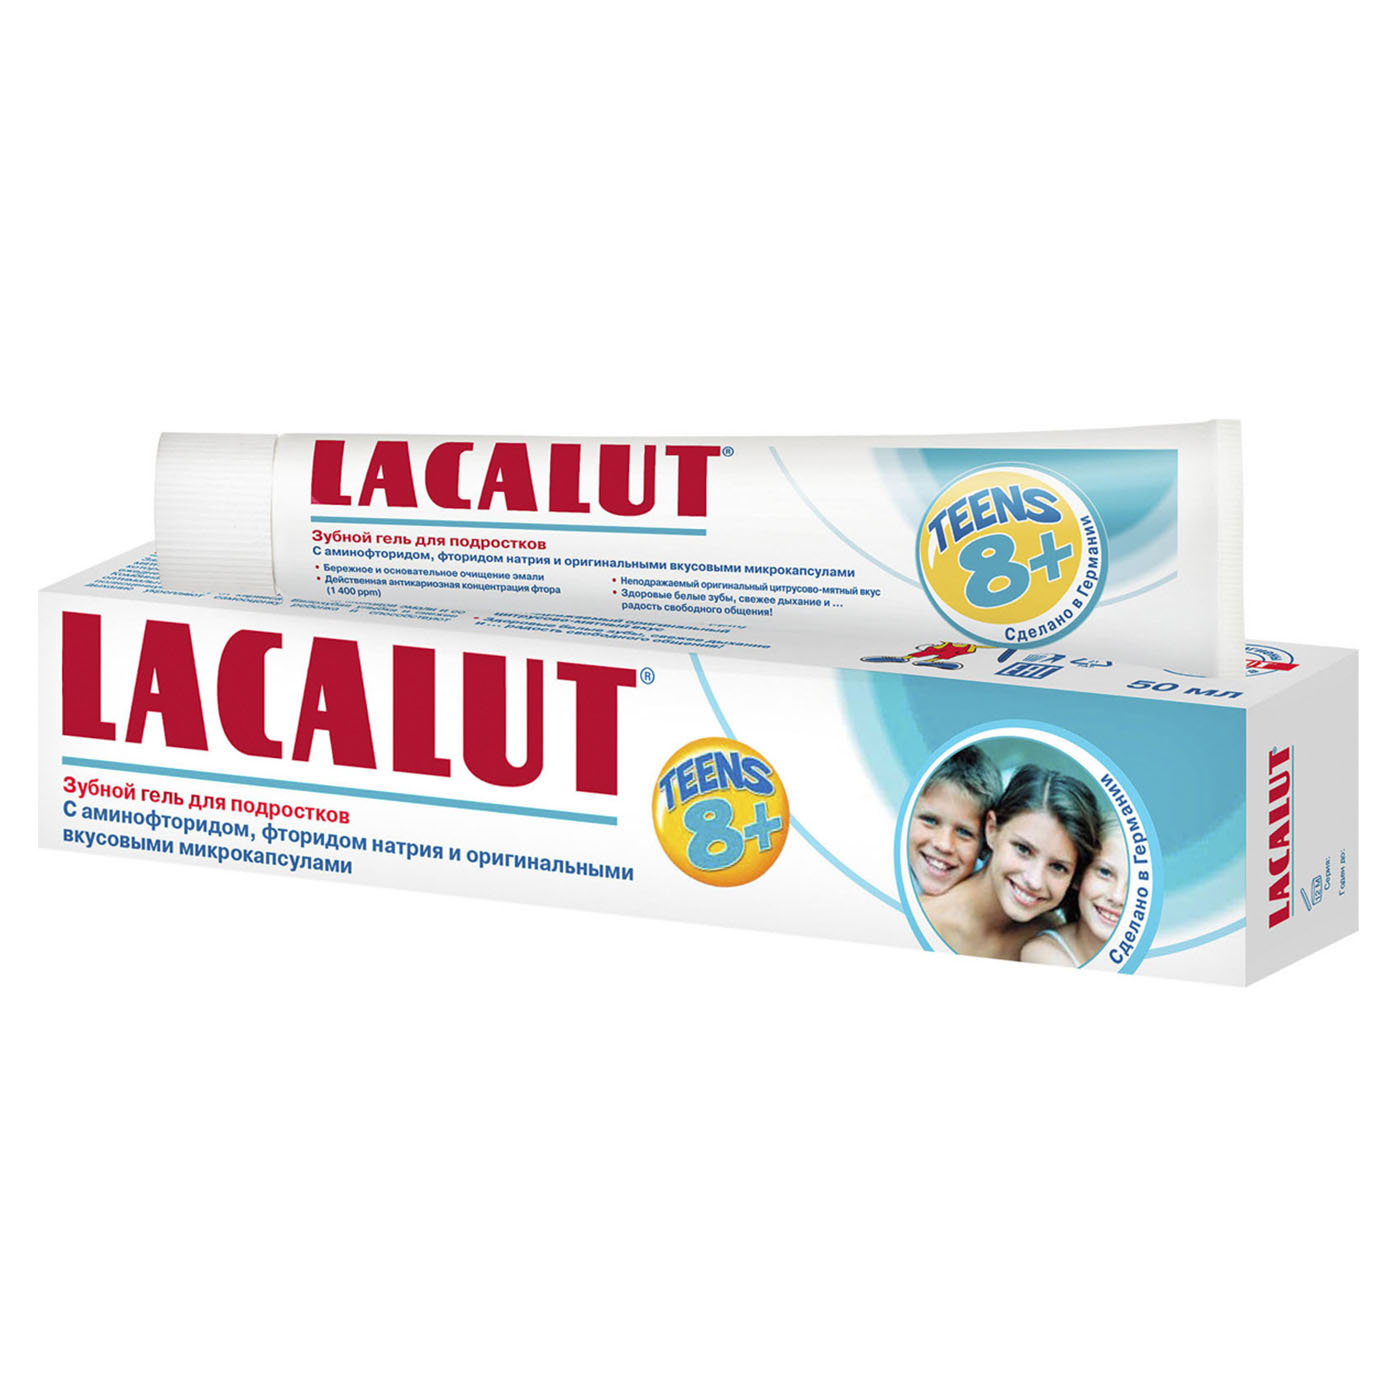 Lacalut Зубная паста Тинс зубной гель 8+ 50 мл (Lacalut, Зубные пасты)